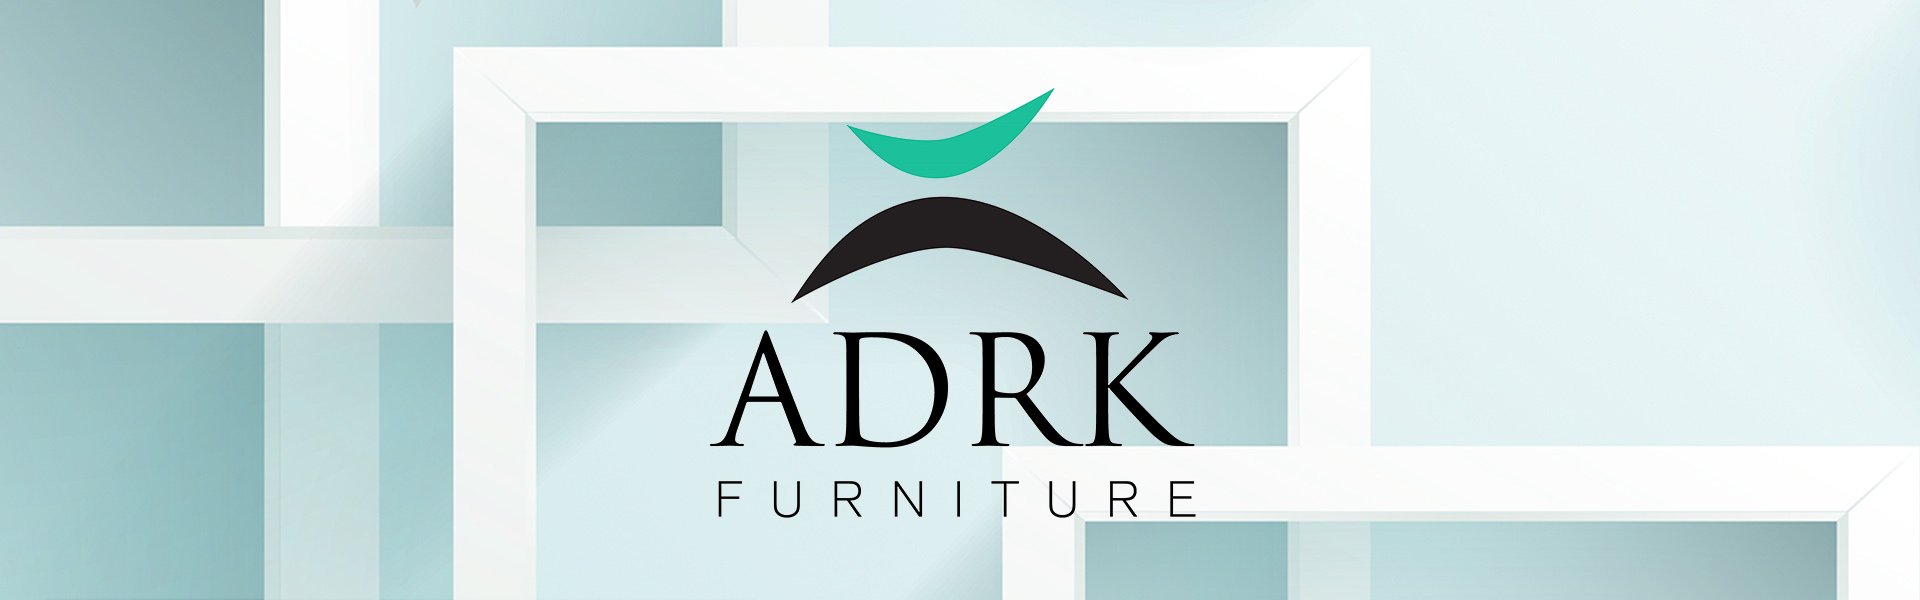 Детские двухъярусные кровати LETICIA ADRK Furniture